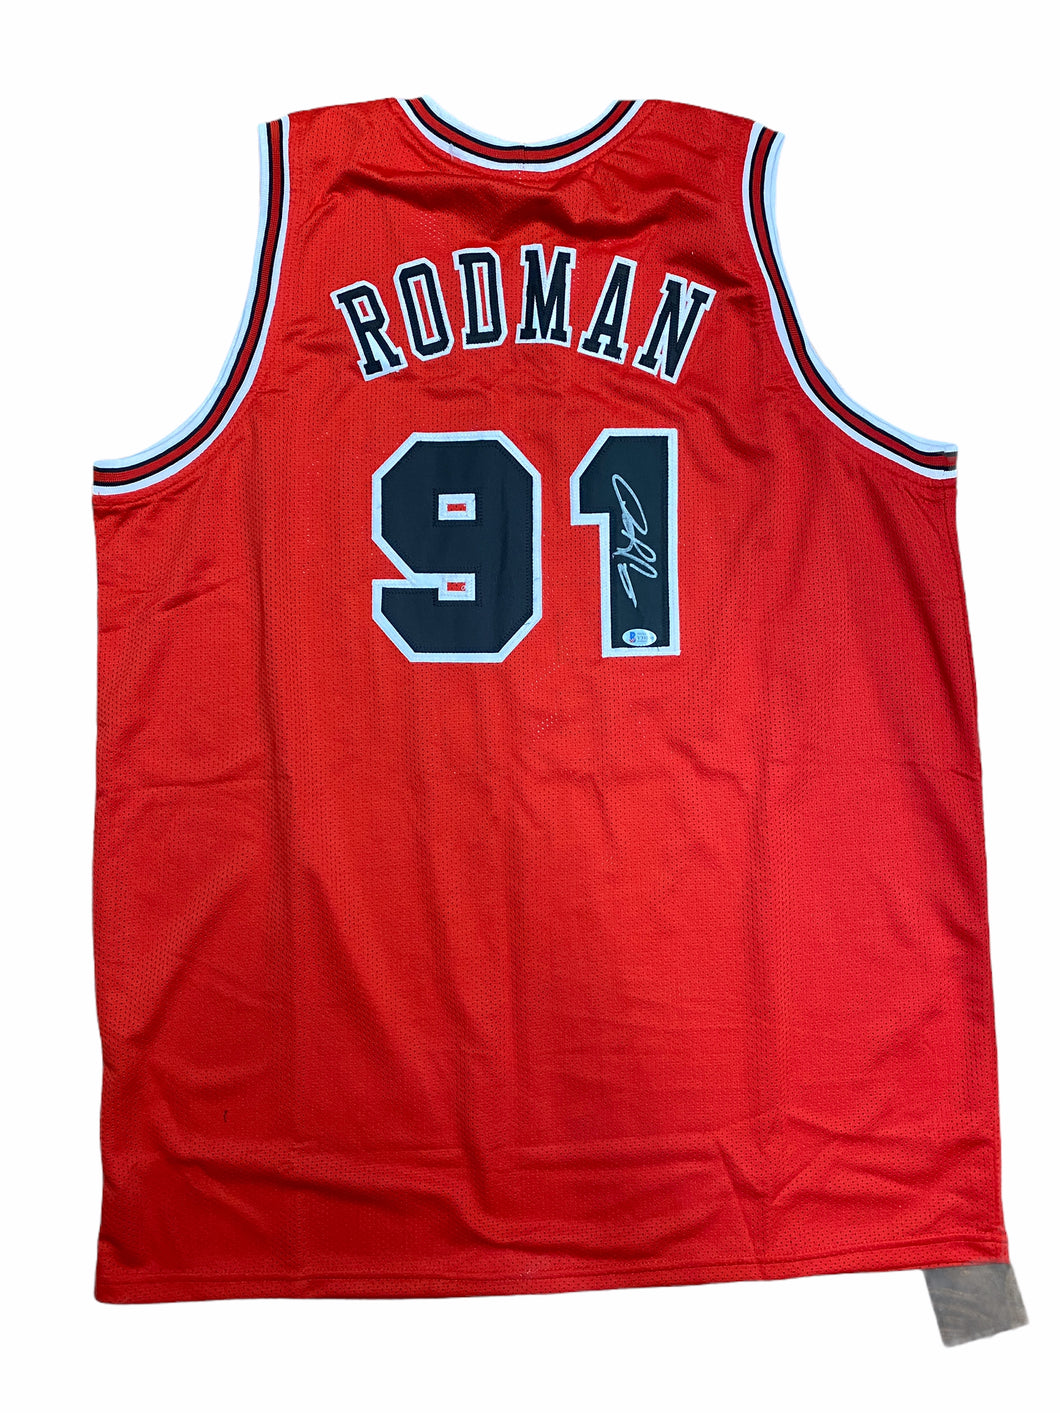 Jersey / Bulls / Dennis Rodman